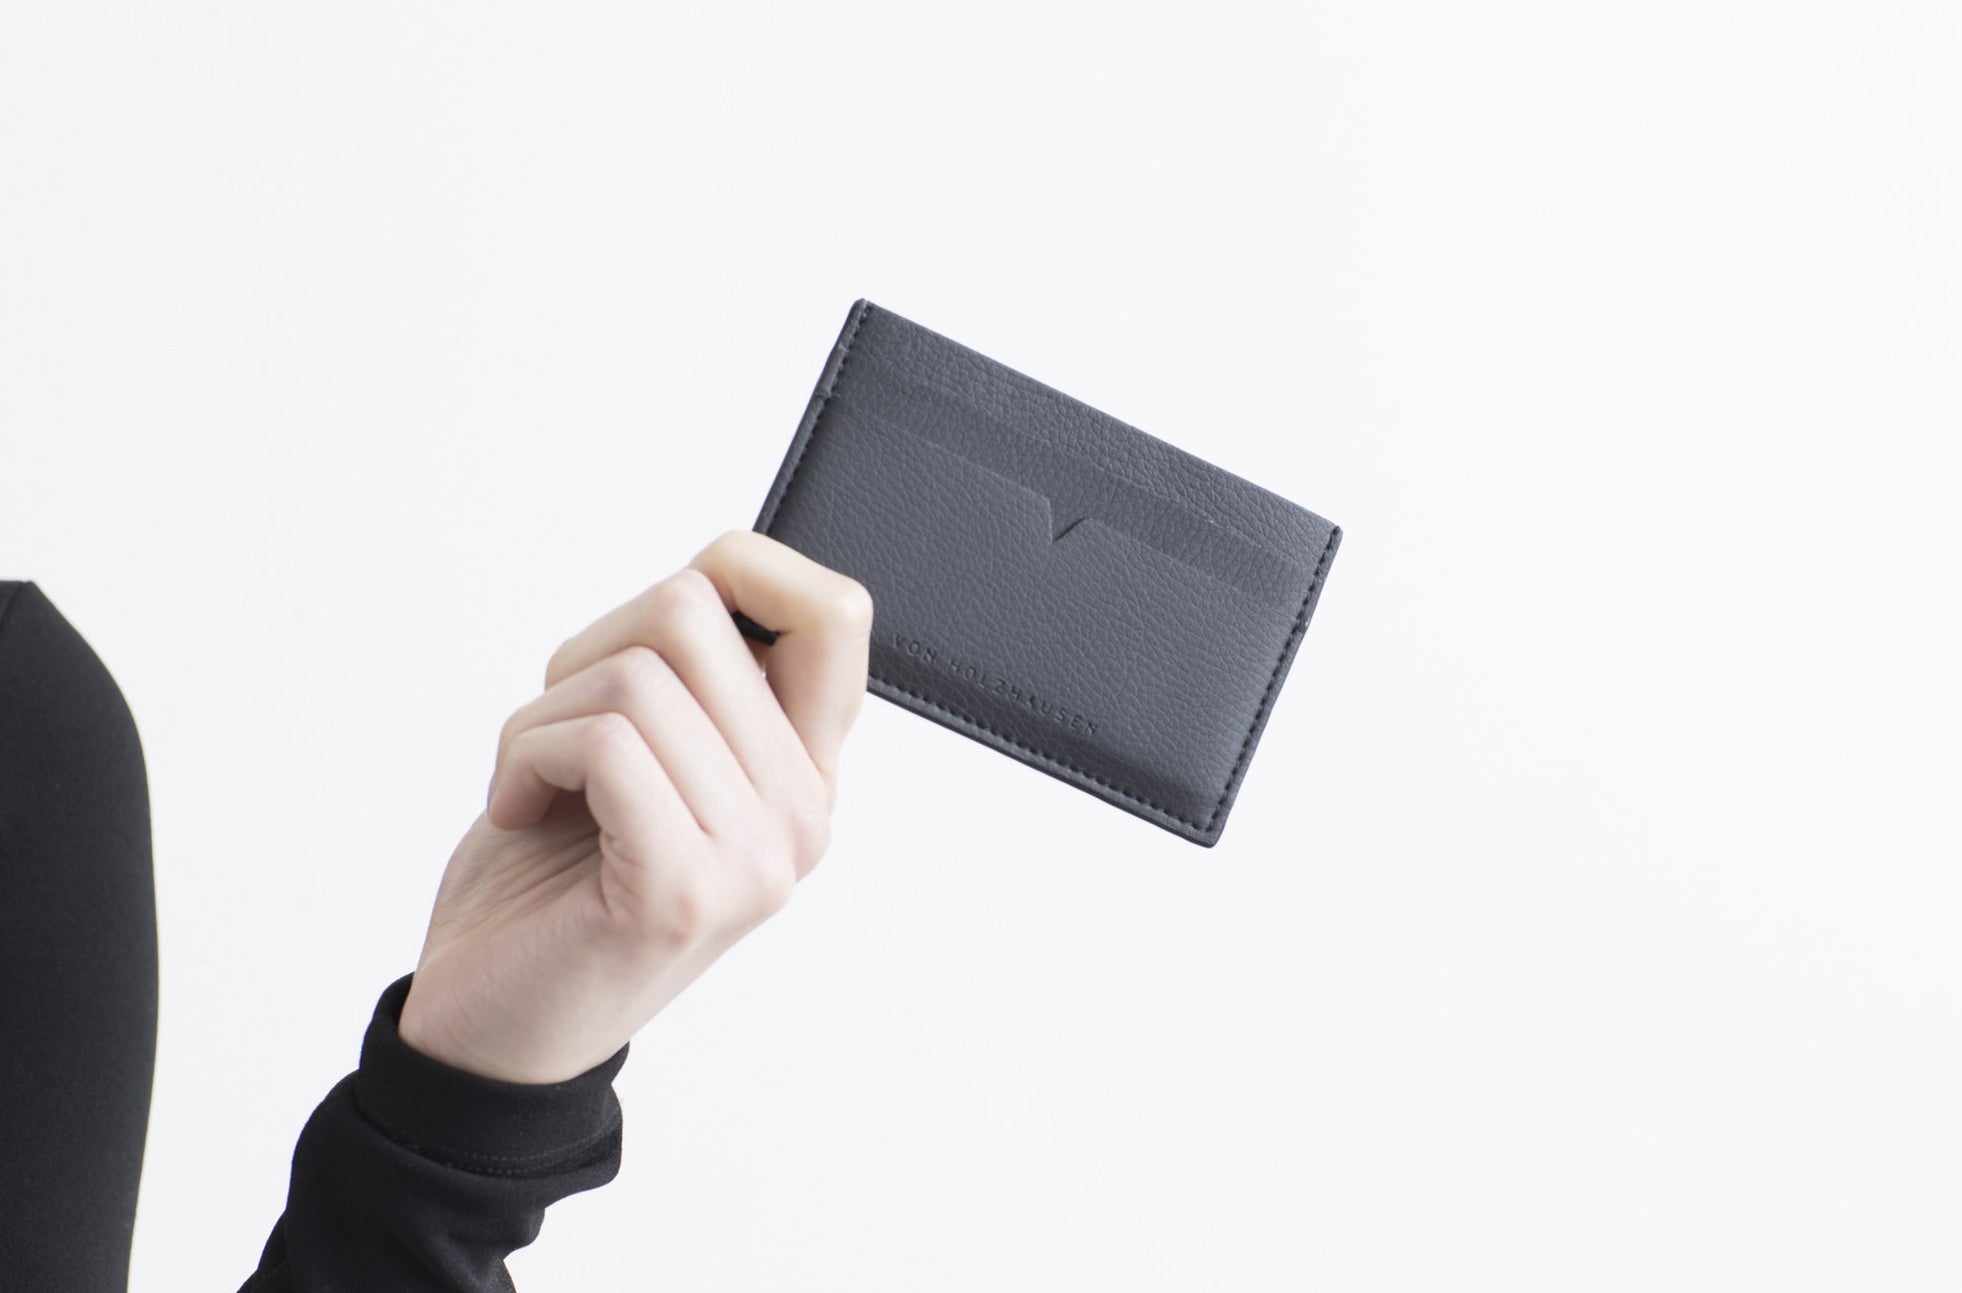 The Credit Card Holder - Sample Sale in Technik in Black image 